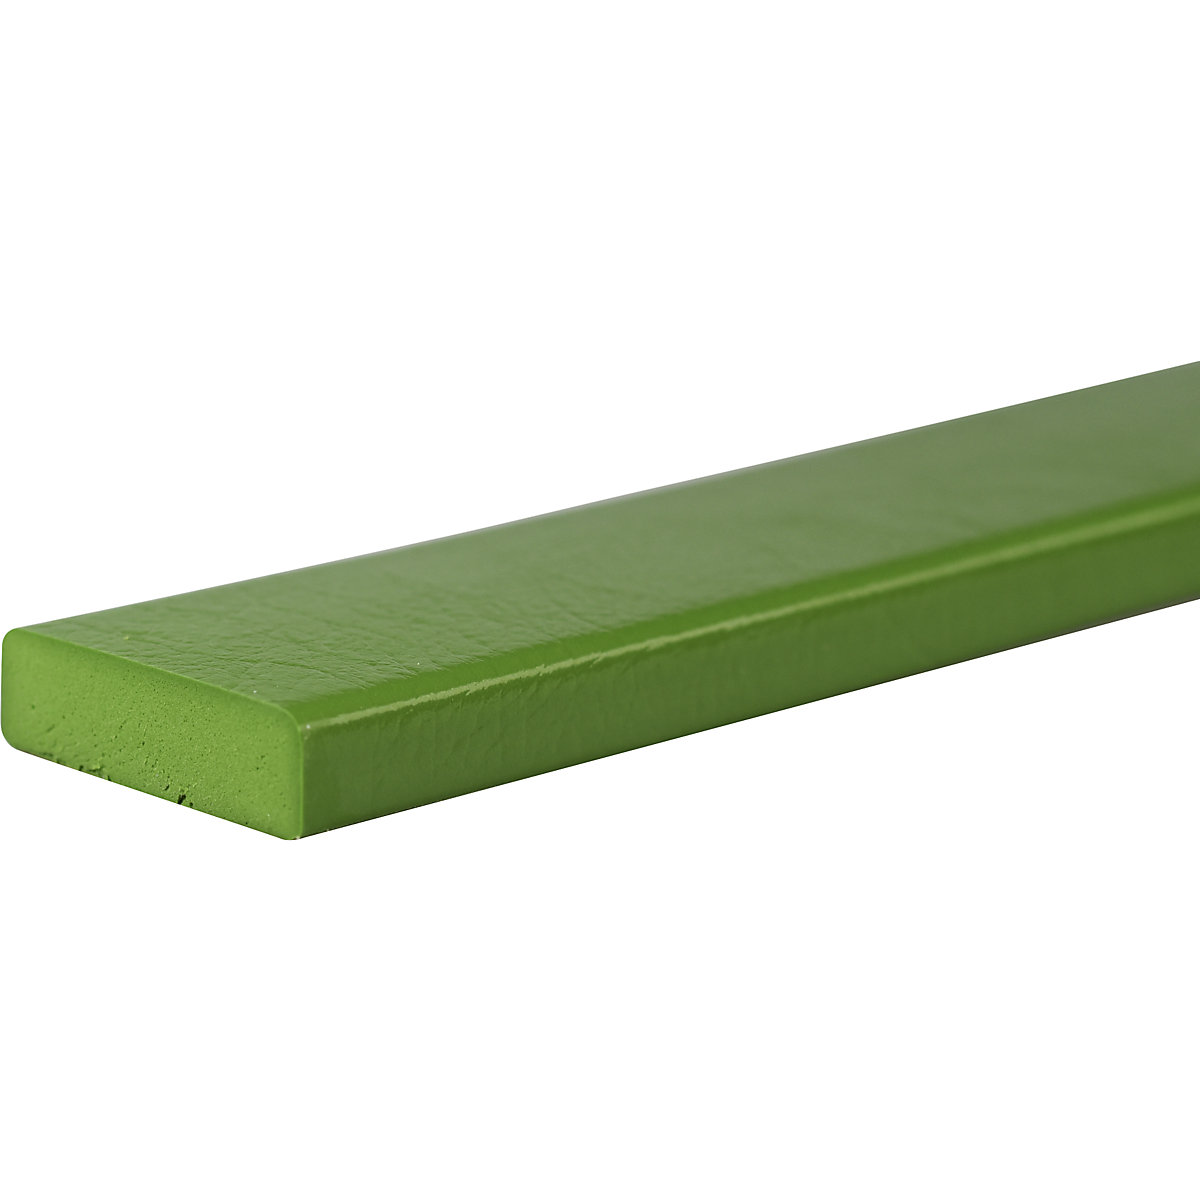 SHG – Proteção de superfícies Knuffi®, tipo S, unidade de 1 m, verde